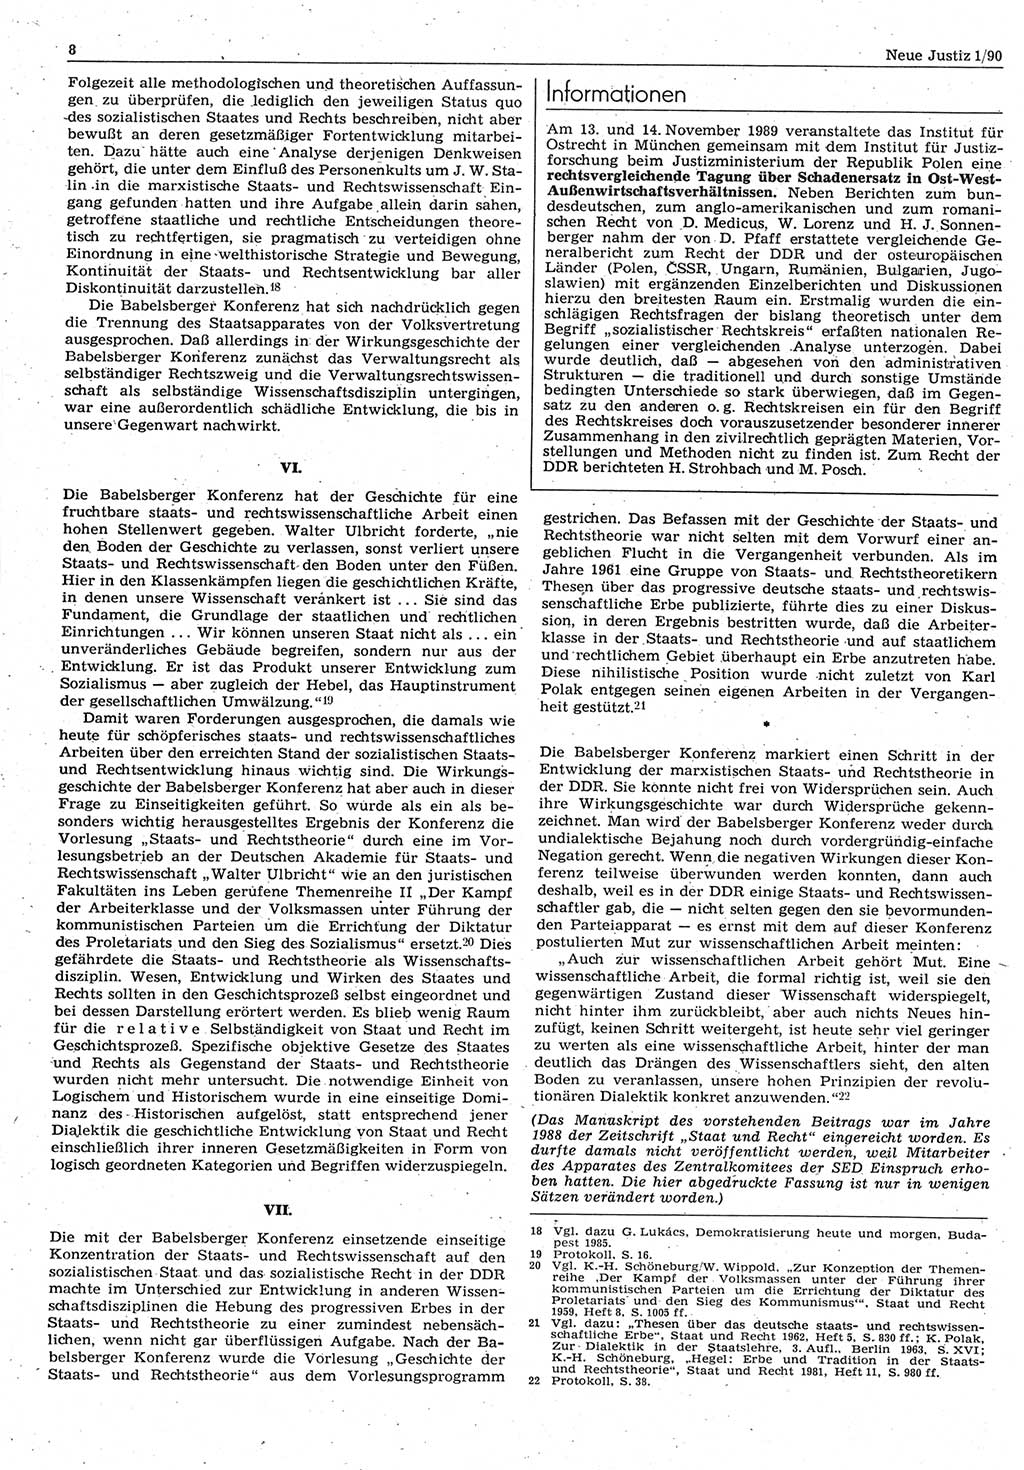 Neue Justiz (NJ), Zeitschrift für Rechtsetzung und Rechtsanwendung [Deutsche Demokratische Republik (DDR)], 44. Jahrgang 1990, Seite 8 (NJ DDR 1990, S. 8)